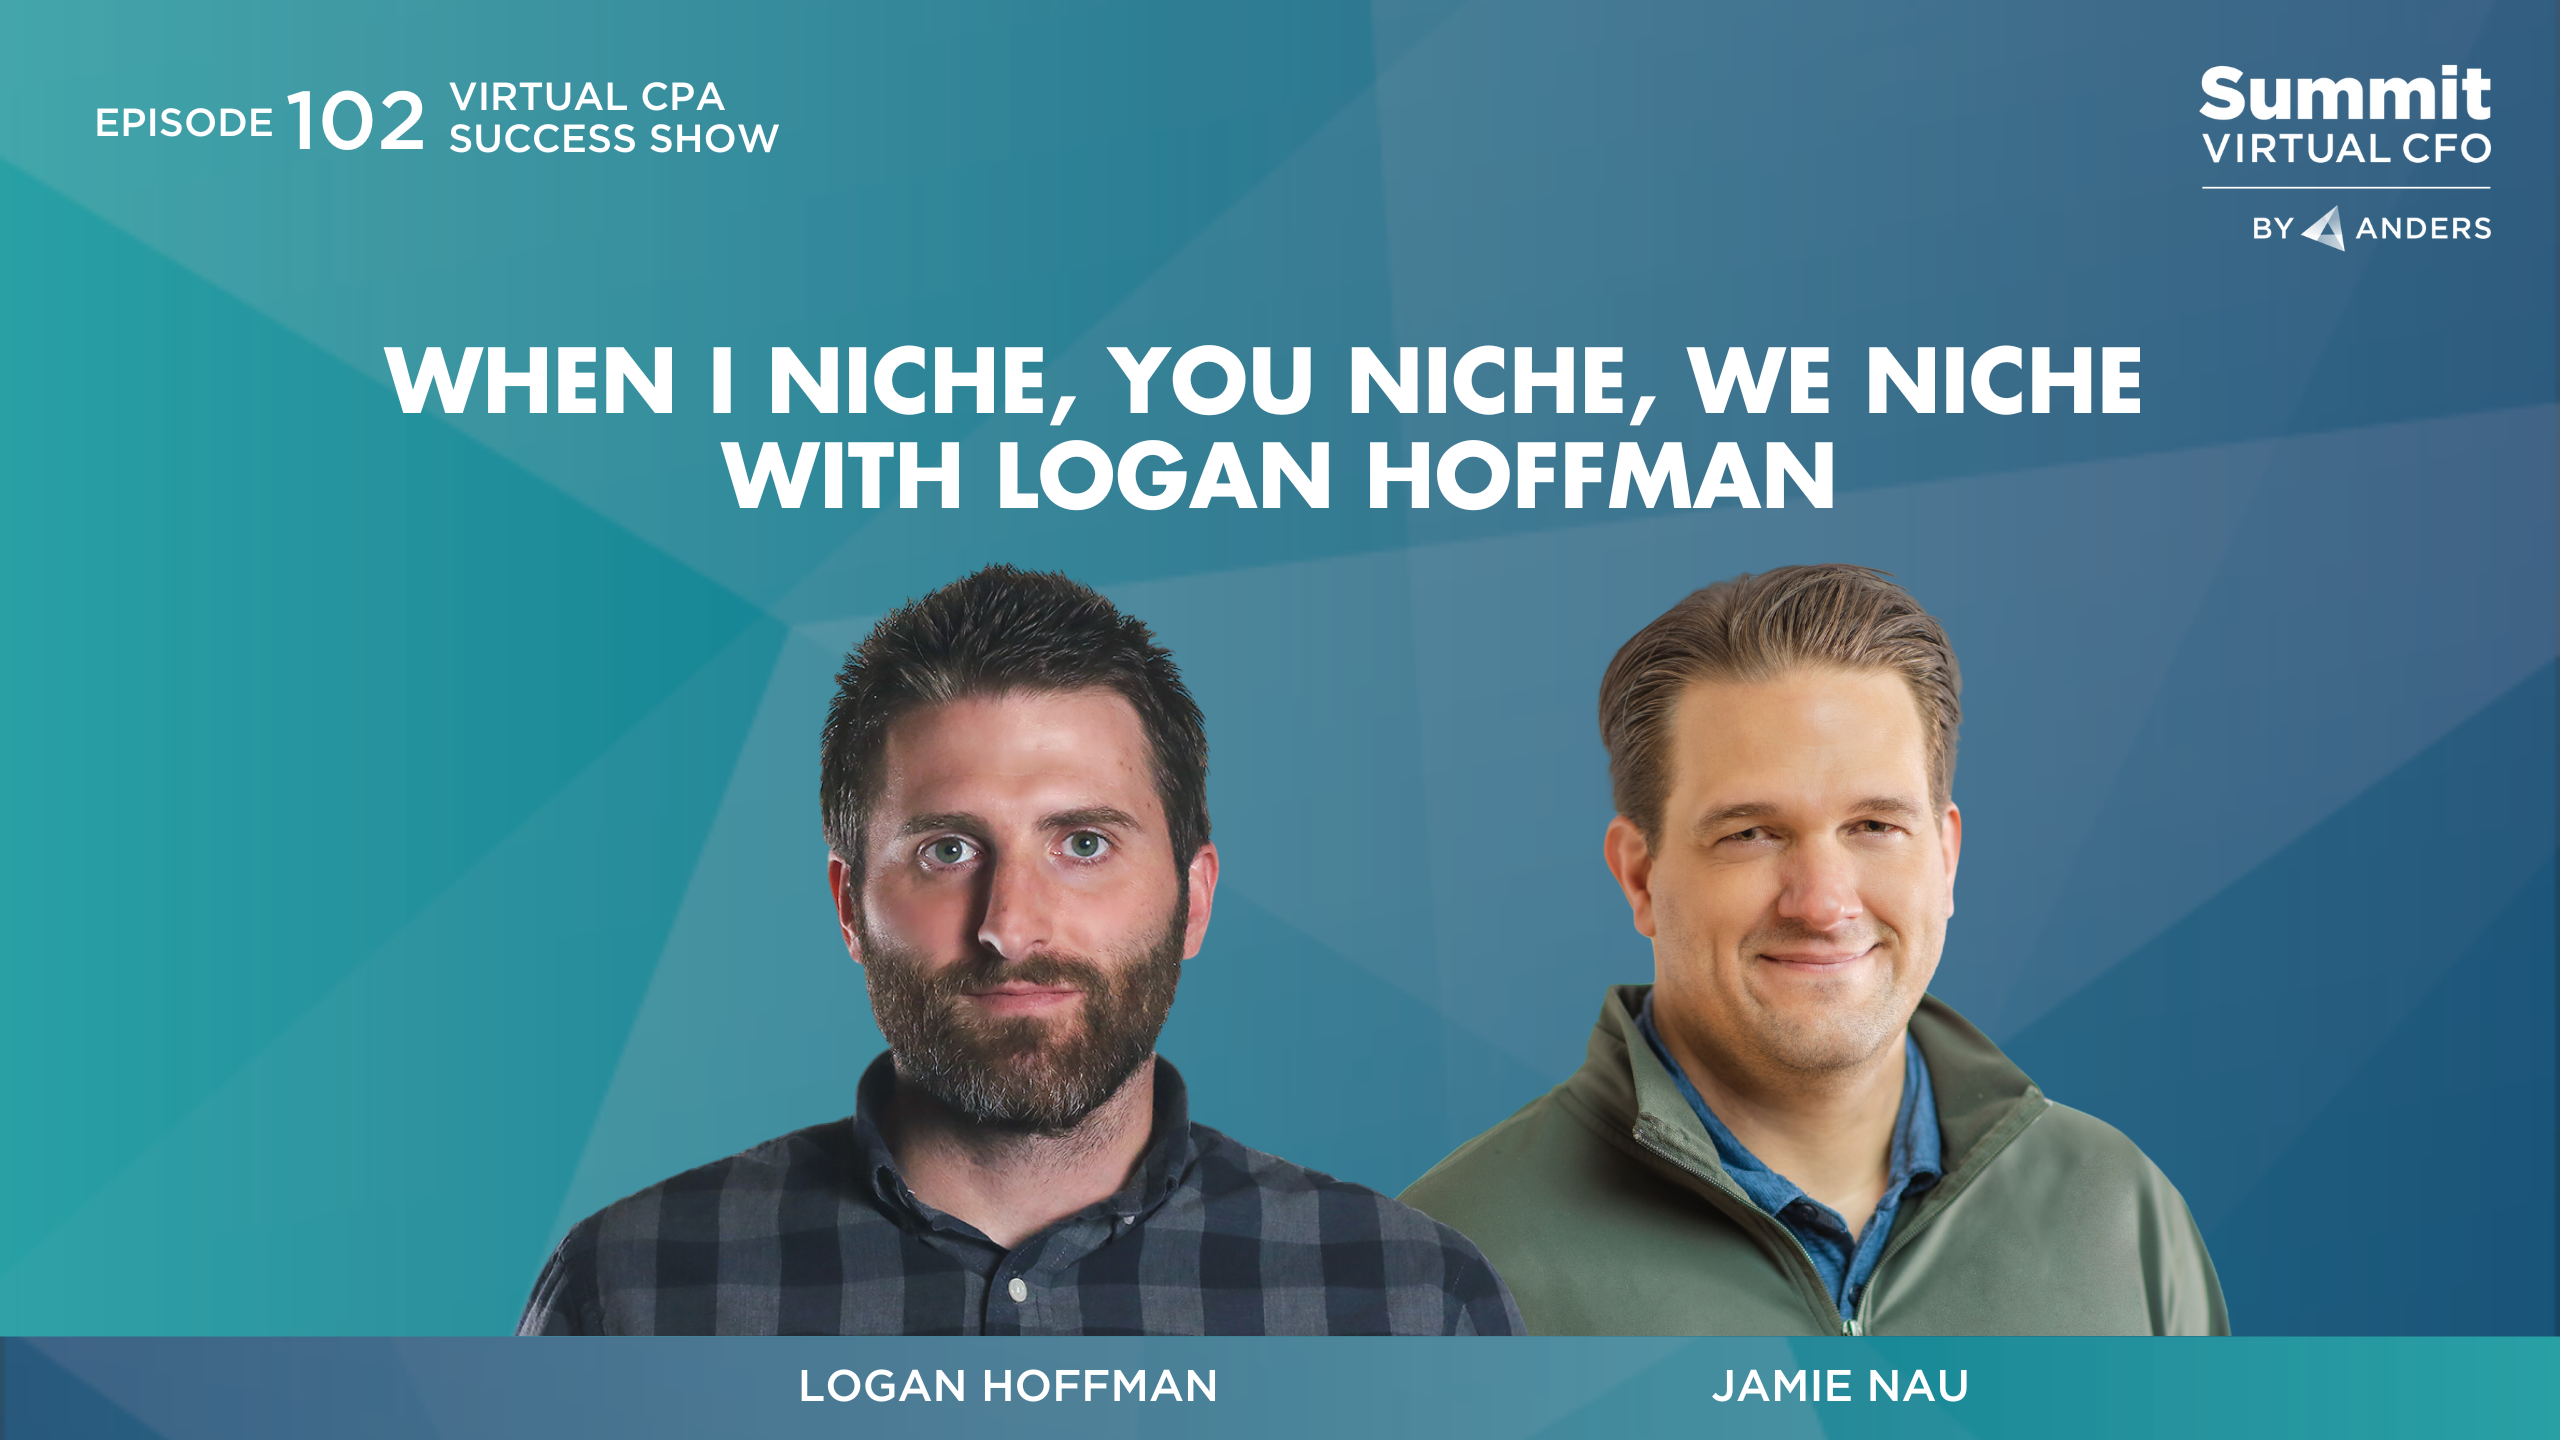 Niche with Logan Hoffman